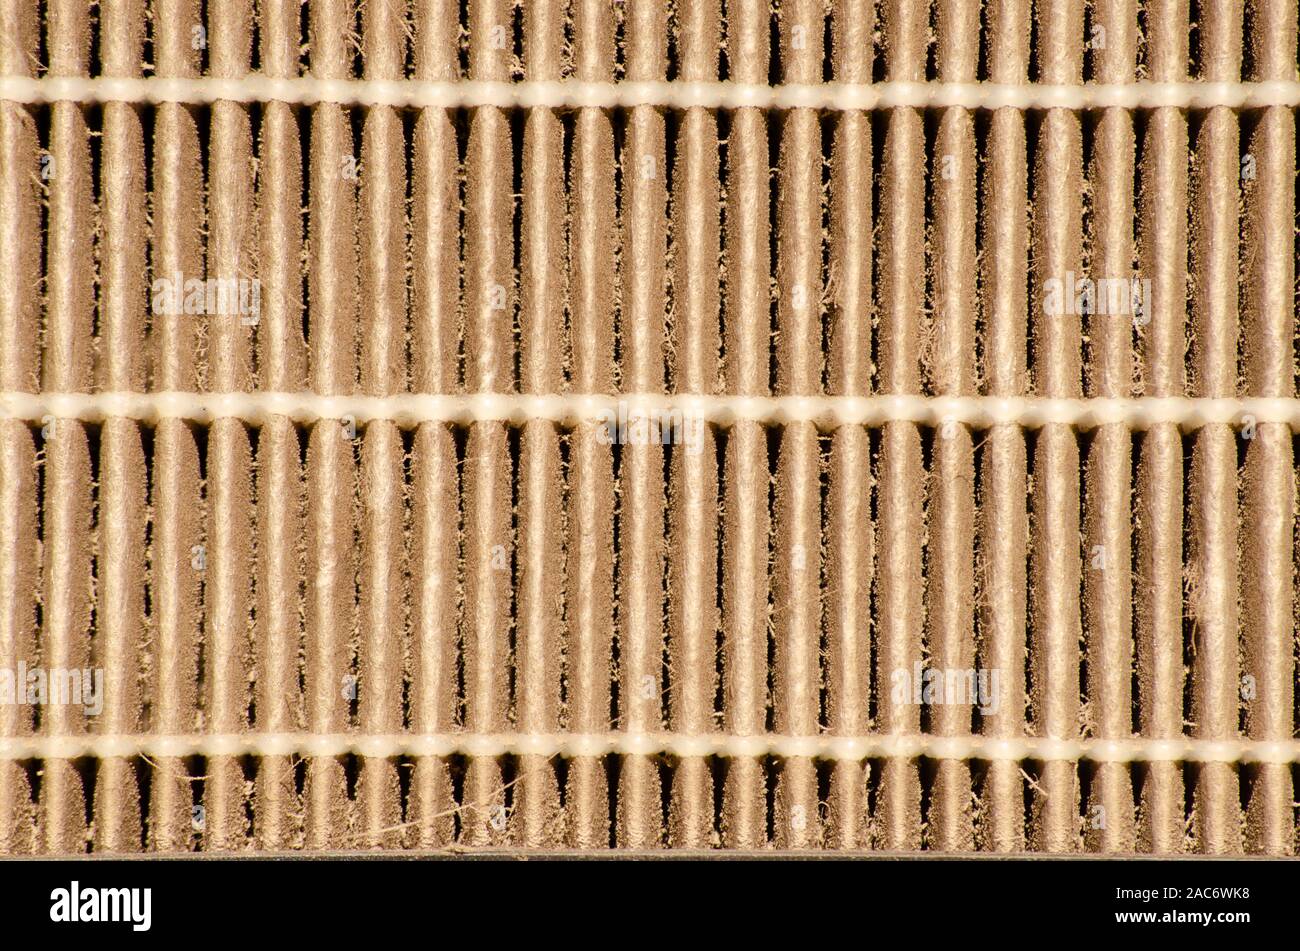 Oberfläche verwendet Hepa Luftreiniger Filter Stockfoto